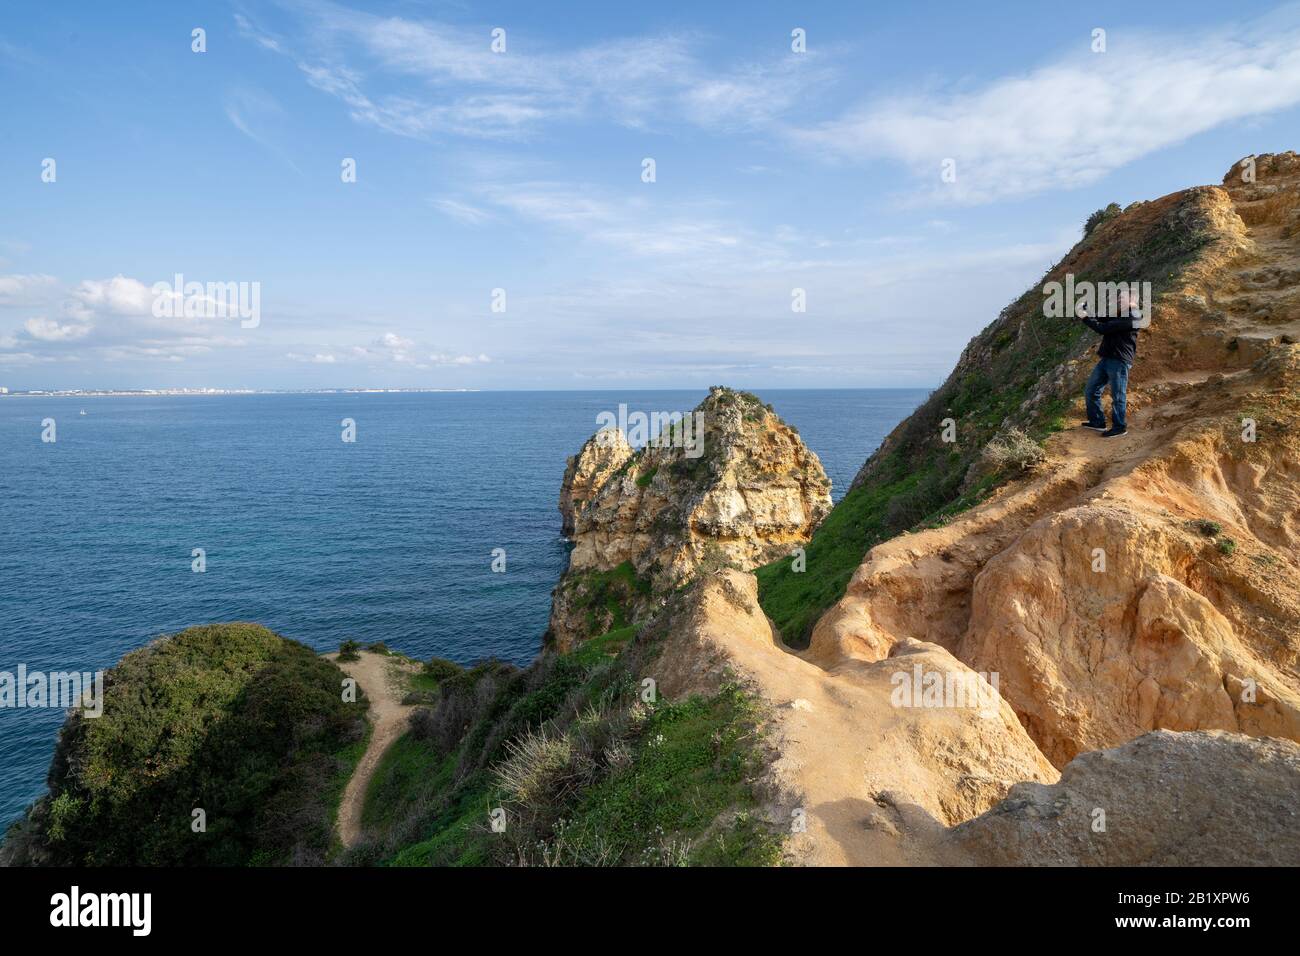 Lagos, Portugal - 22. Januar 2020: Thrillseeker Tourist man fotografiert mit einem Telefon auf einer sehr steilen Felswand an der Algarve, mit malerischen Aussichten Stockfoto